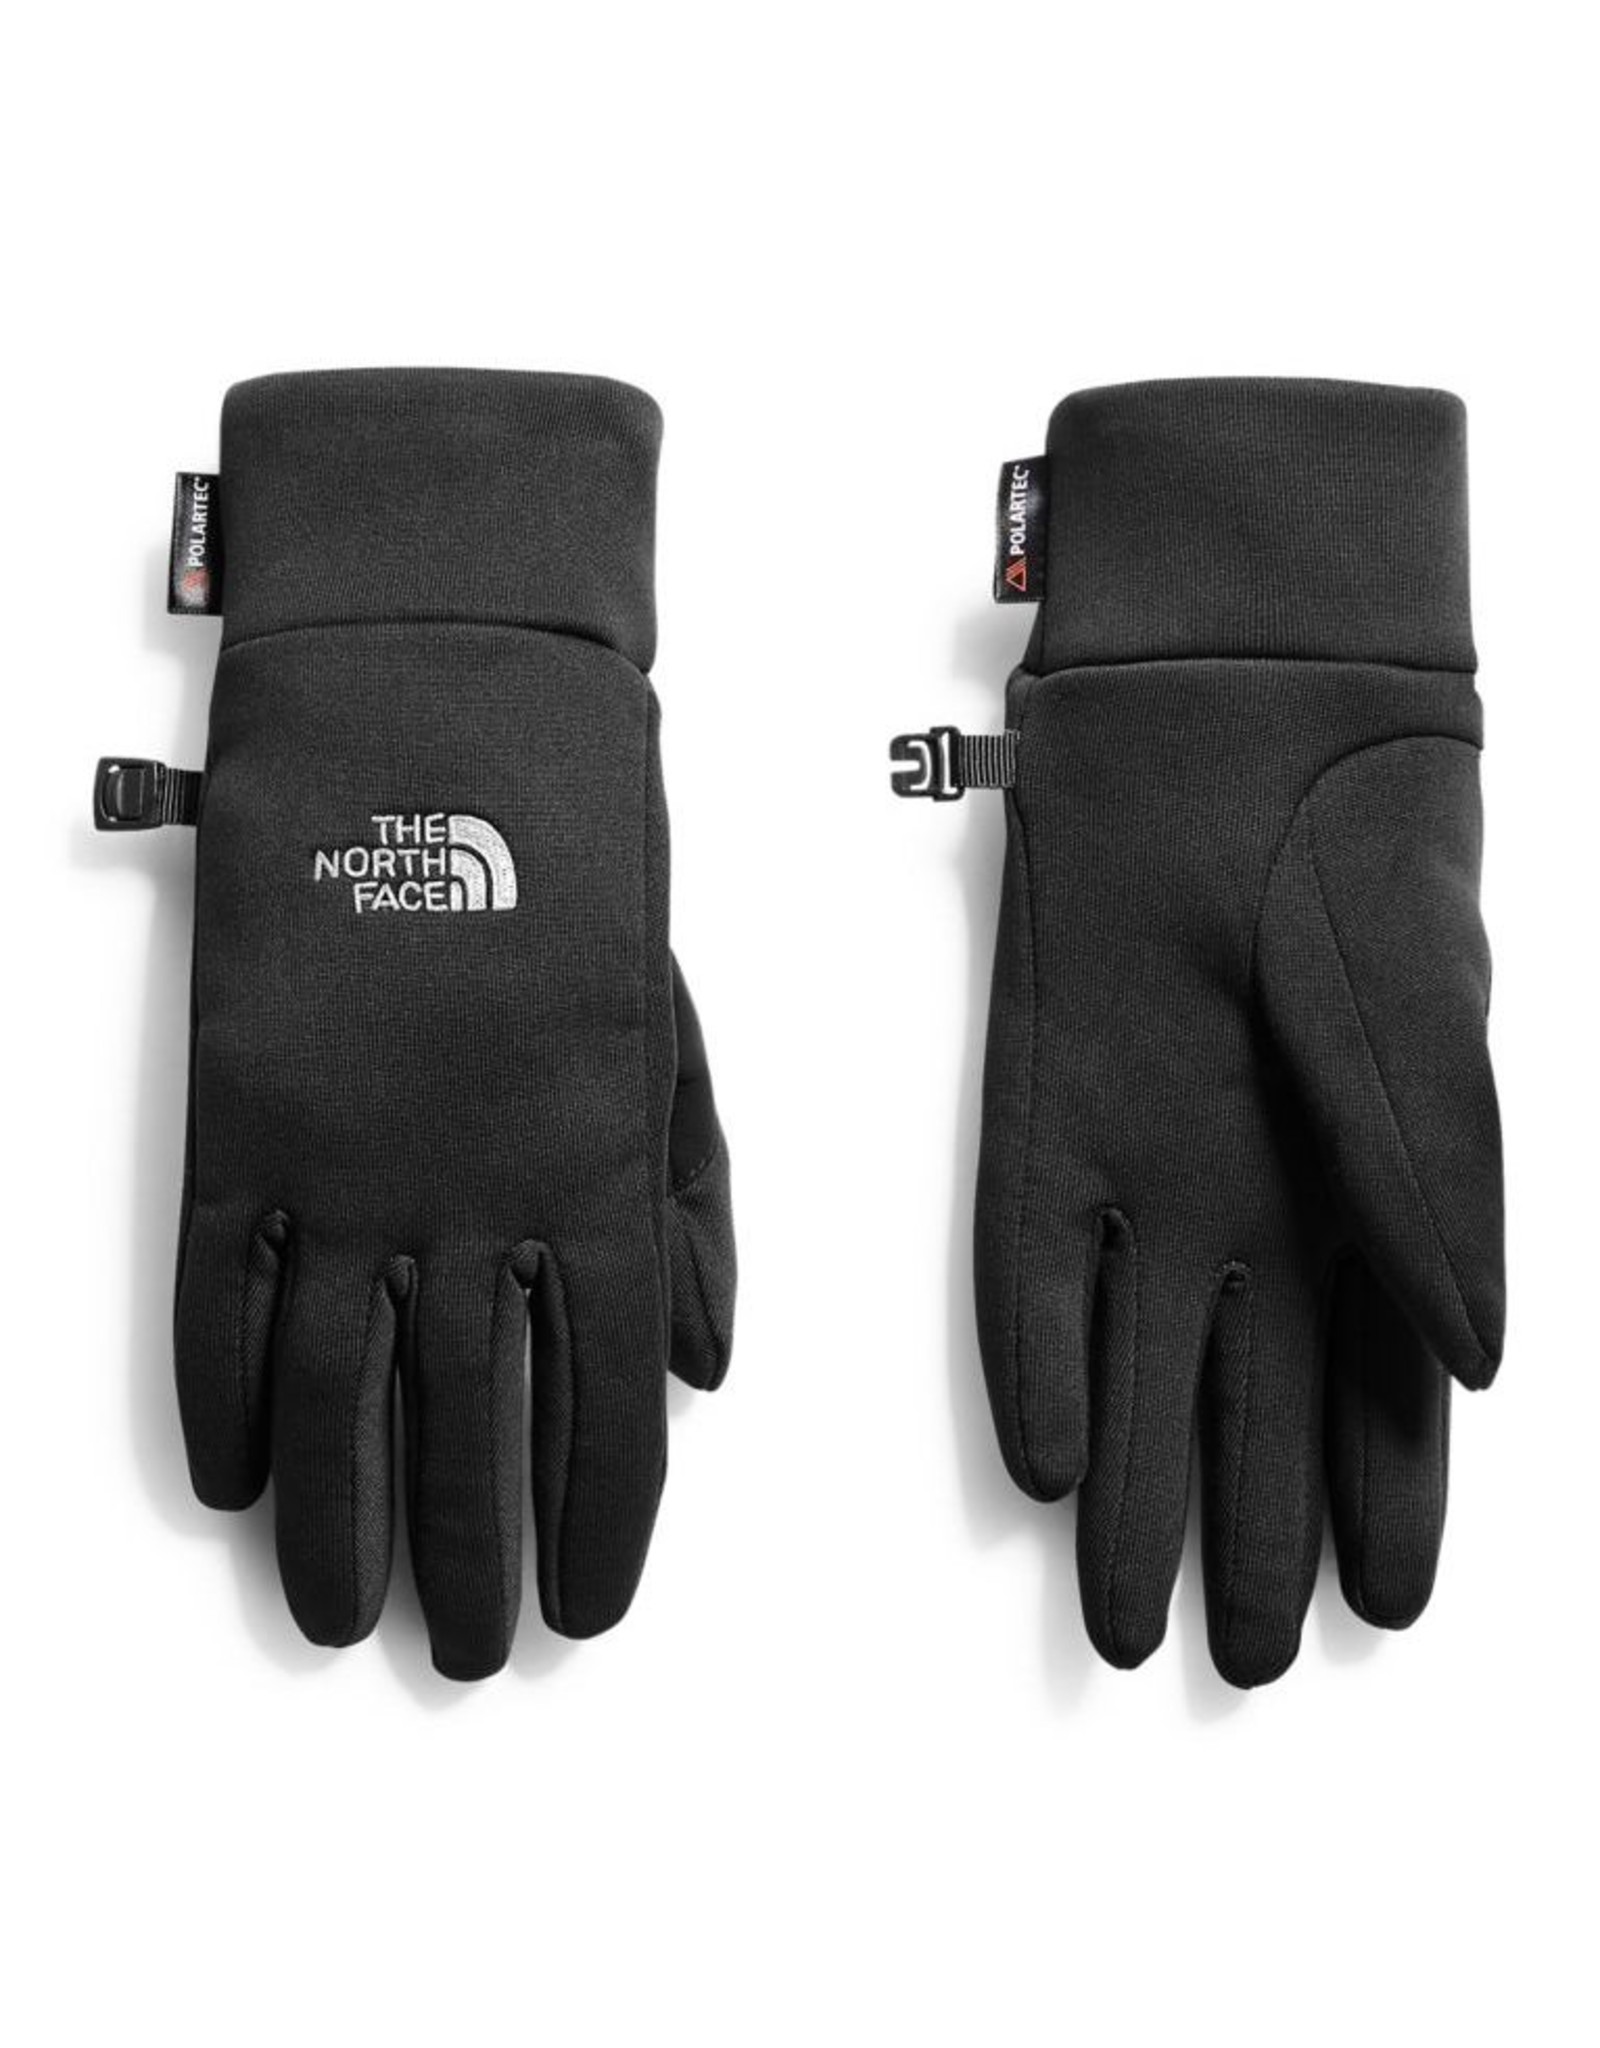 north face polartec gloves